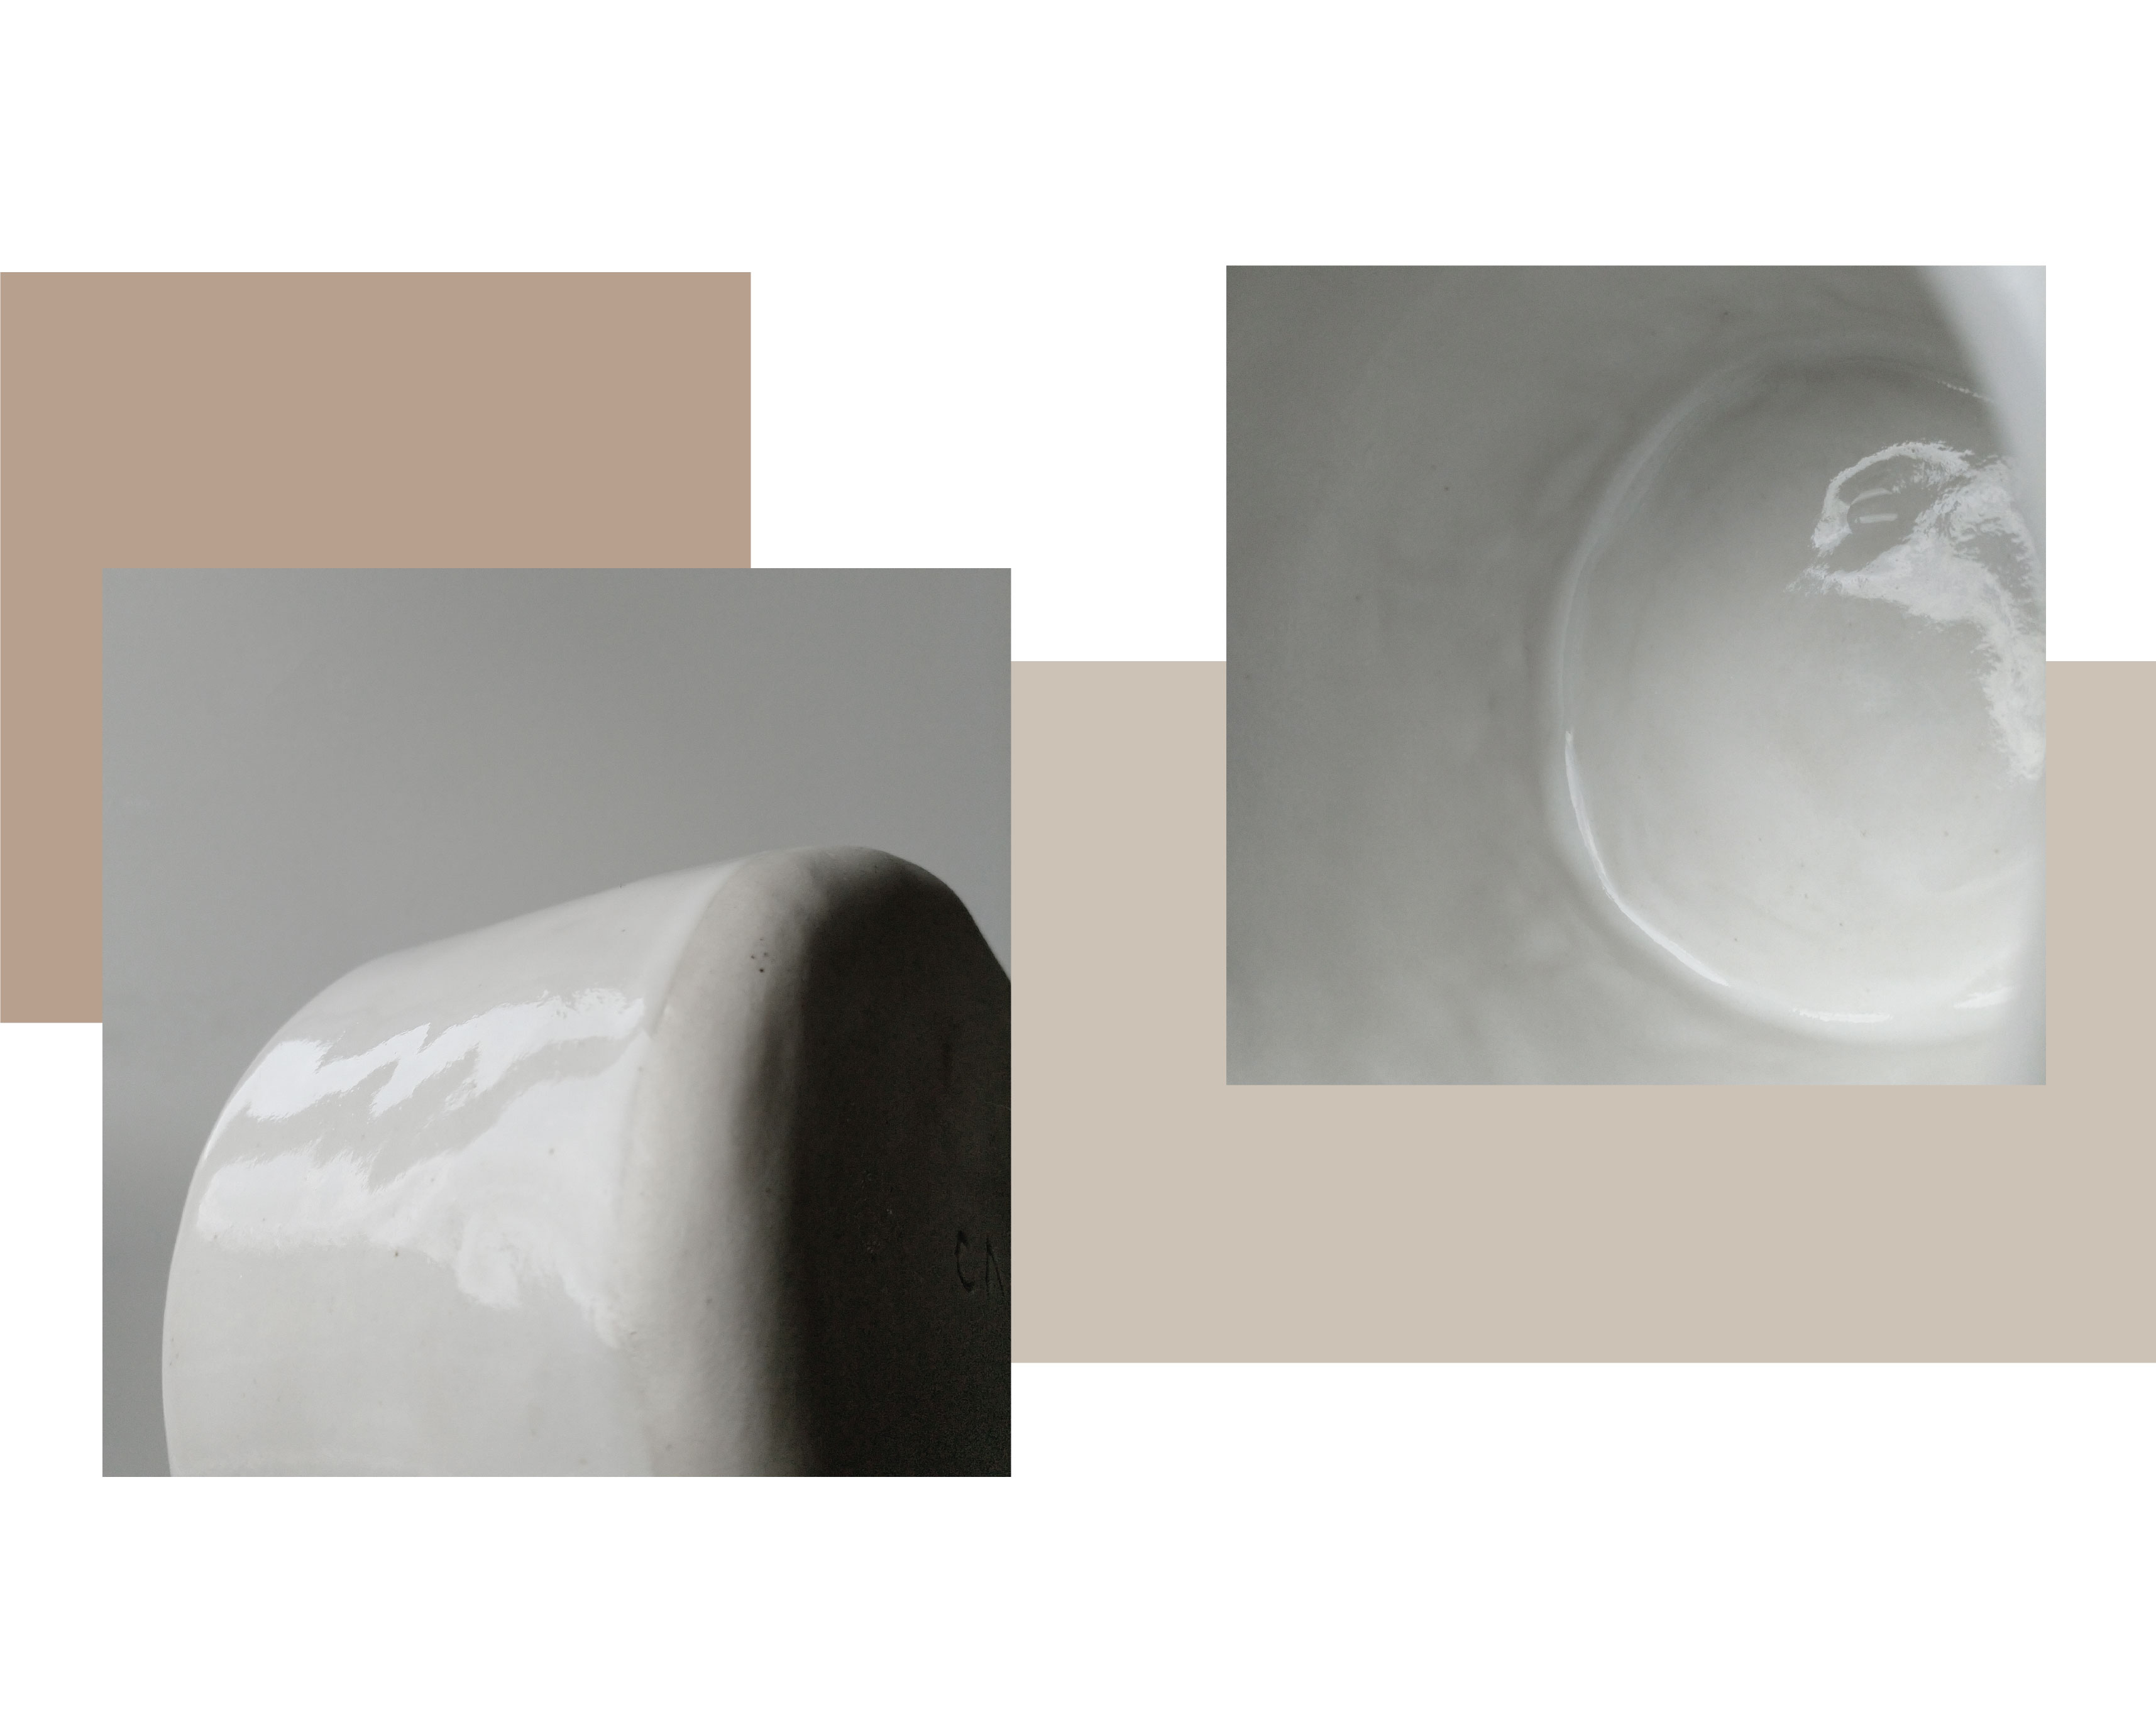  deux images montrent un gros plan de la surface en céramique blanche.